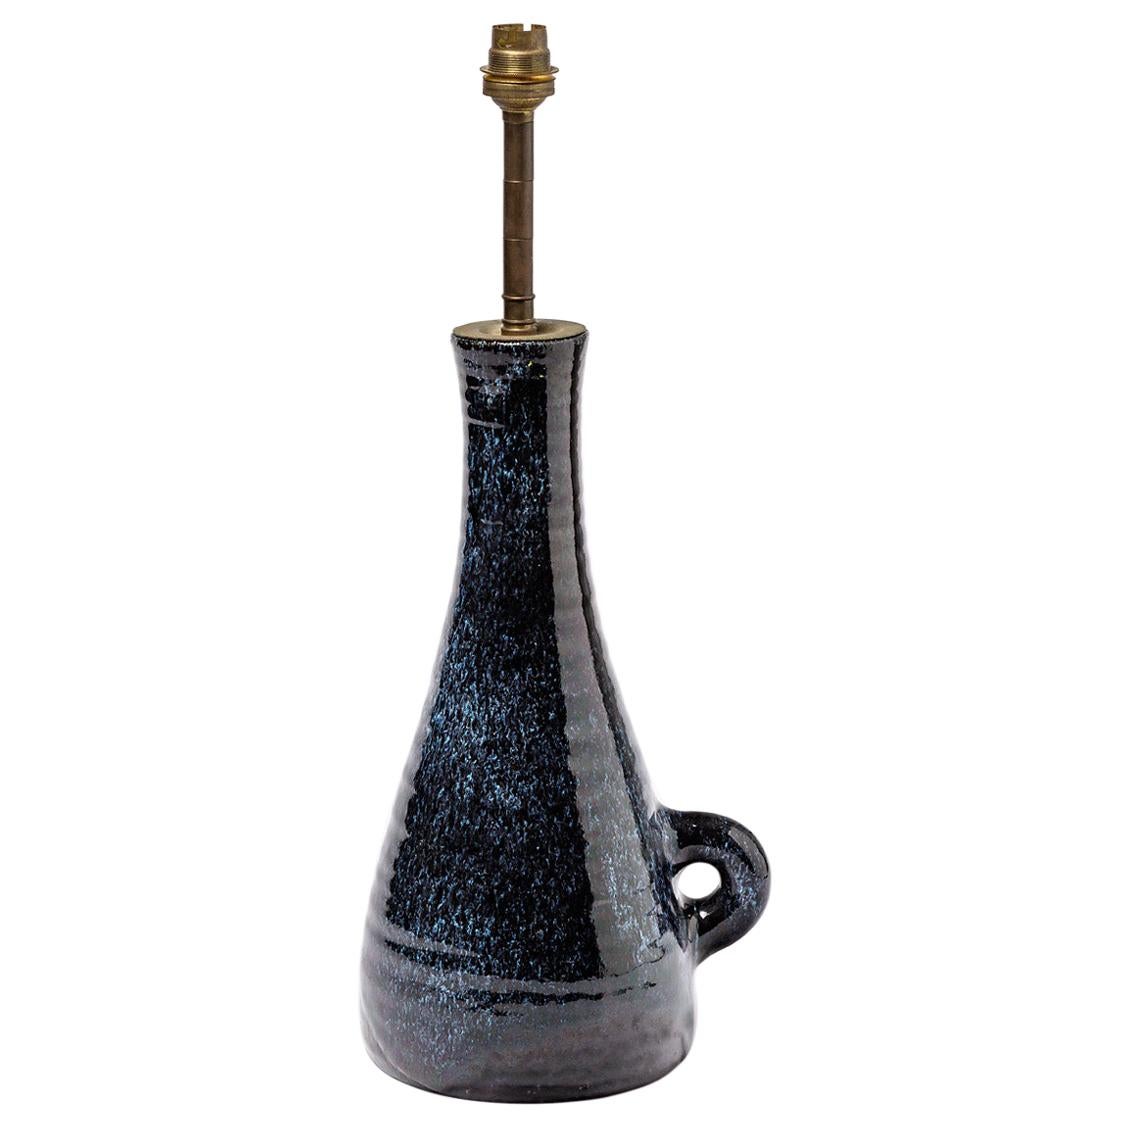 Big Ceramic Lamp by Accolay, circa 1960-1970